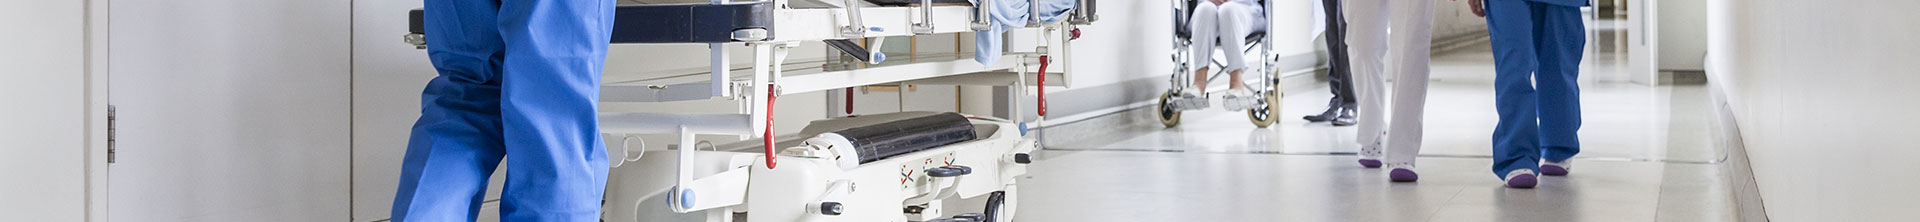 Solutions de nettoyage de planchers Tennant pour l'industrie des soins de santé